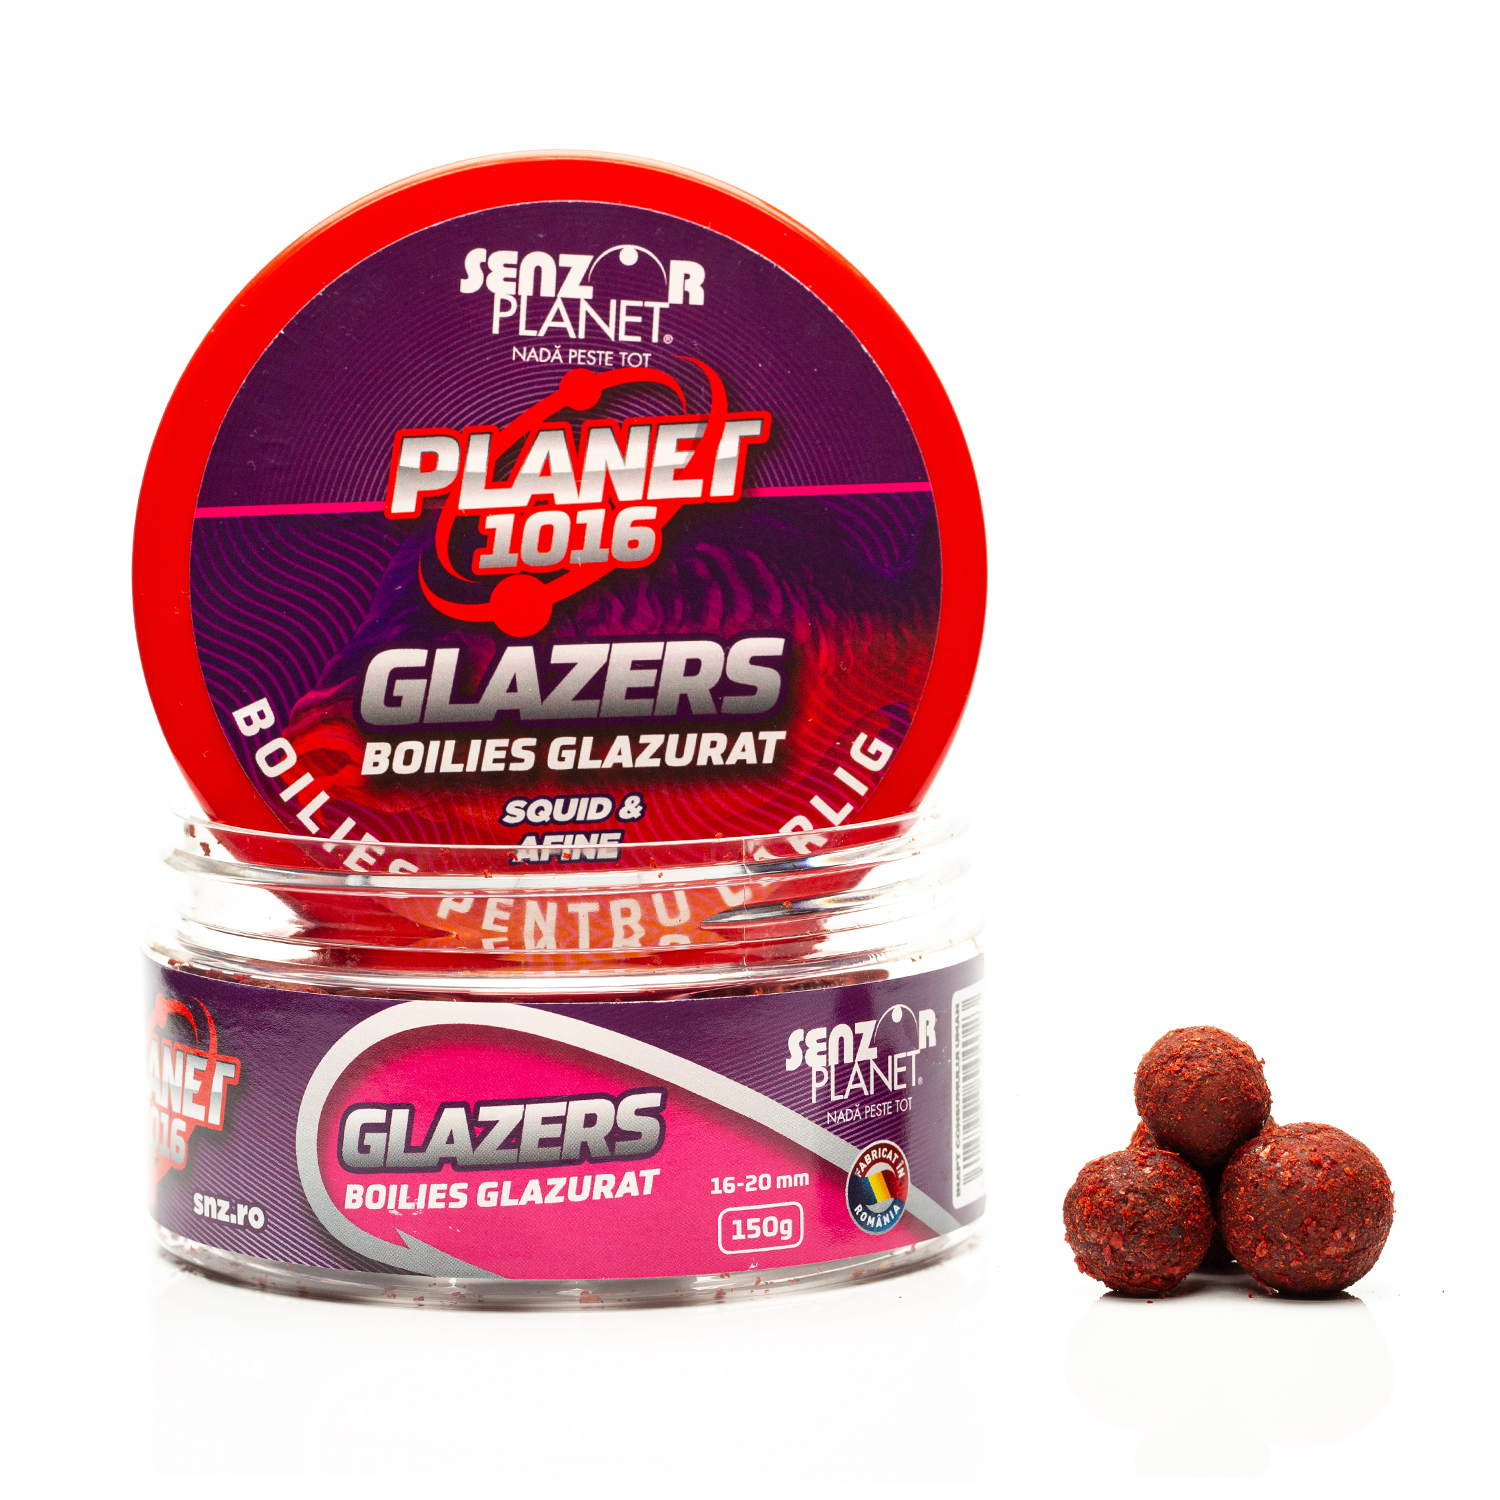 GLAZERS BOILIES GLAZURAT Planet1016 16-20mm 150g
